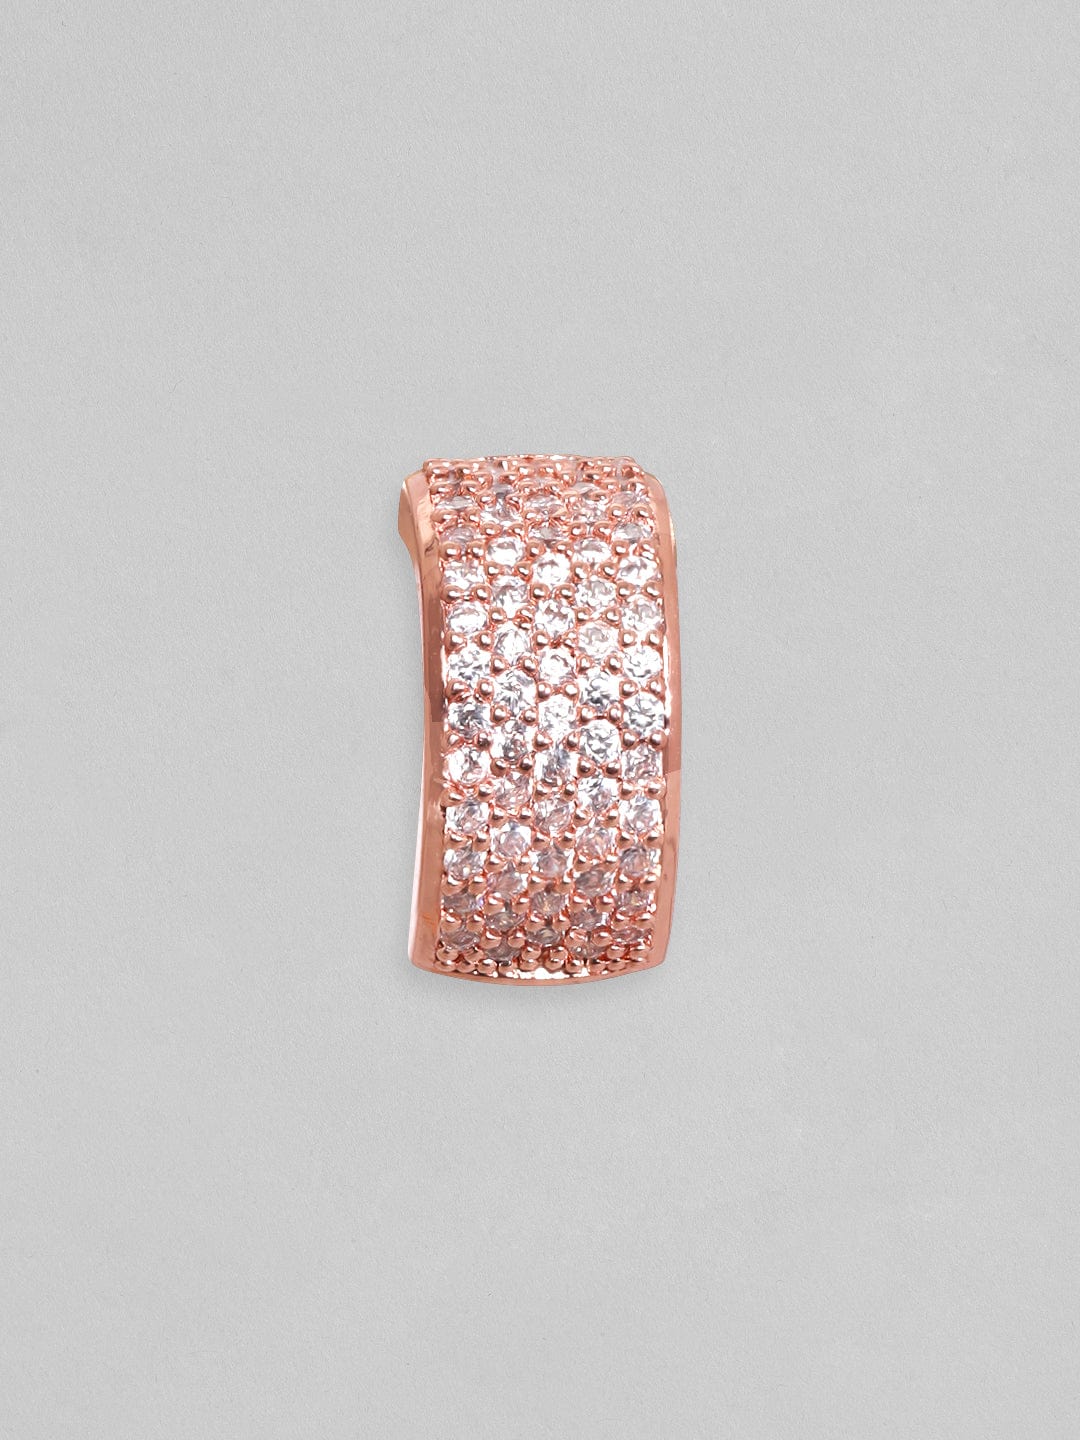 Rubans 18KT Rose Gold-Plated Circular Hoop Earrings Earrings